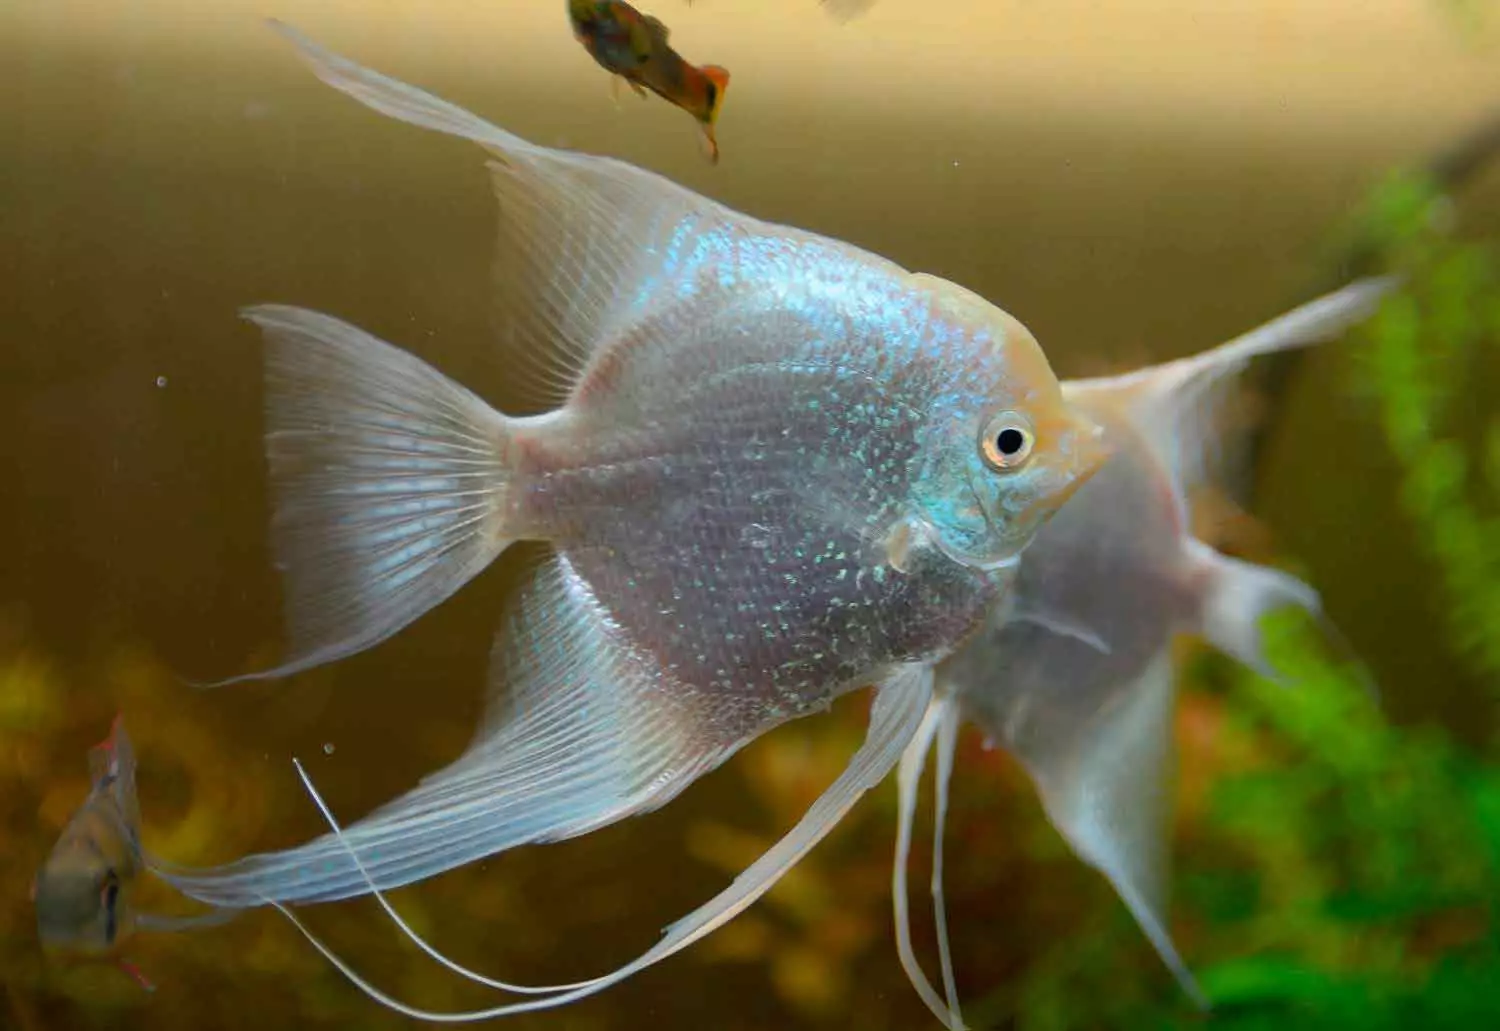 مچھلی ڈینیو (43 فوٹو): ایکویریم پرجاتیوں کی وضاحت. کتنے مچھلی رہتے ہیں؟ بھری کی دیکھ بھال ویوورنی ڈینیو یا نہیں؟ ہم آہنگ ان 11538_37